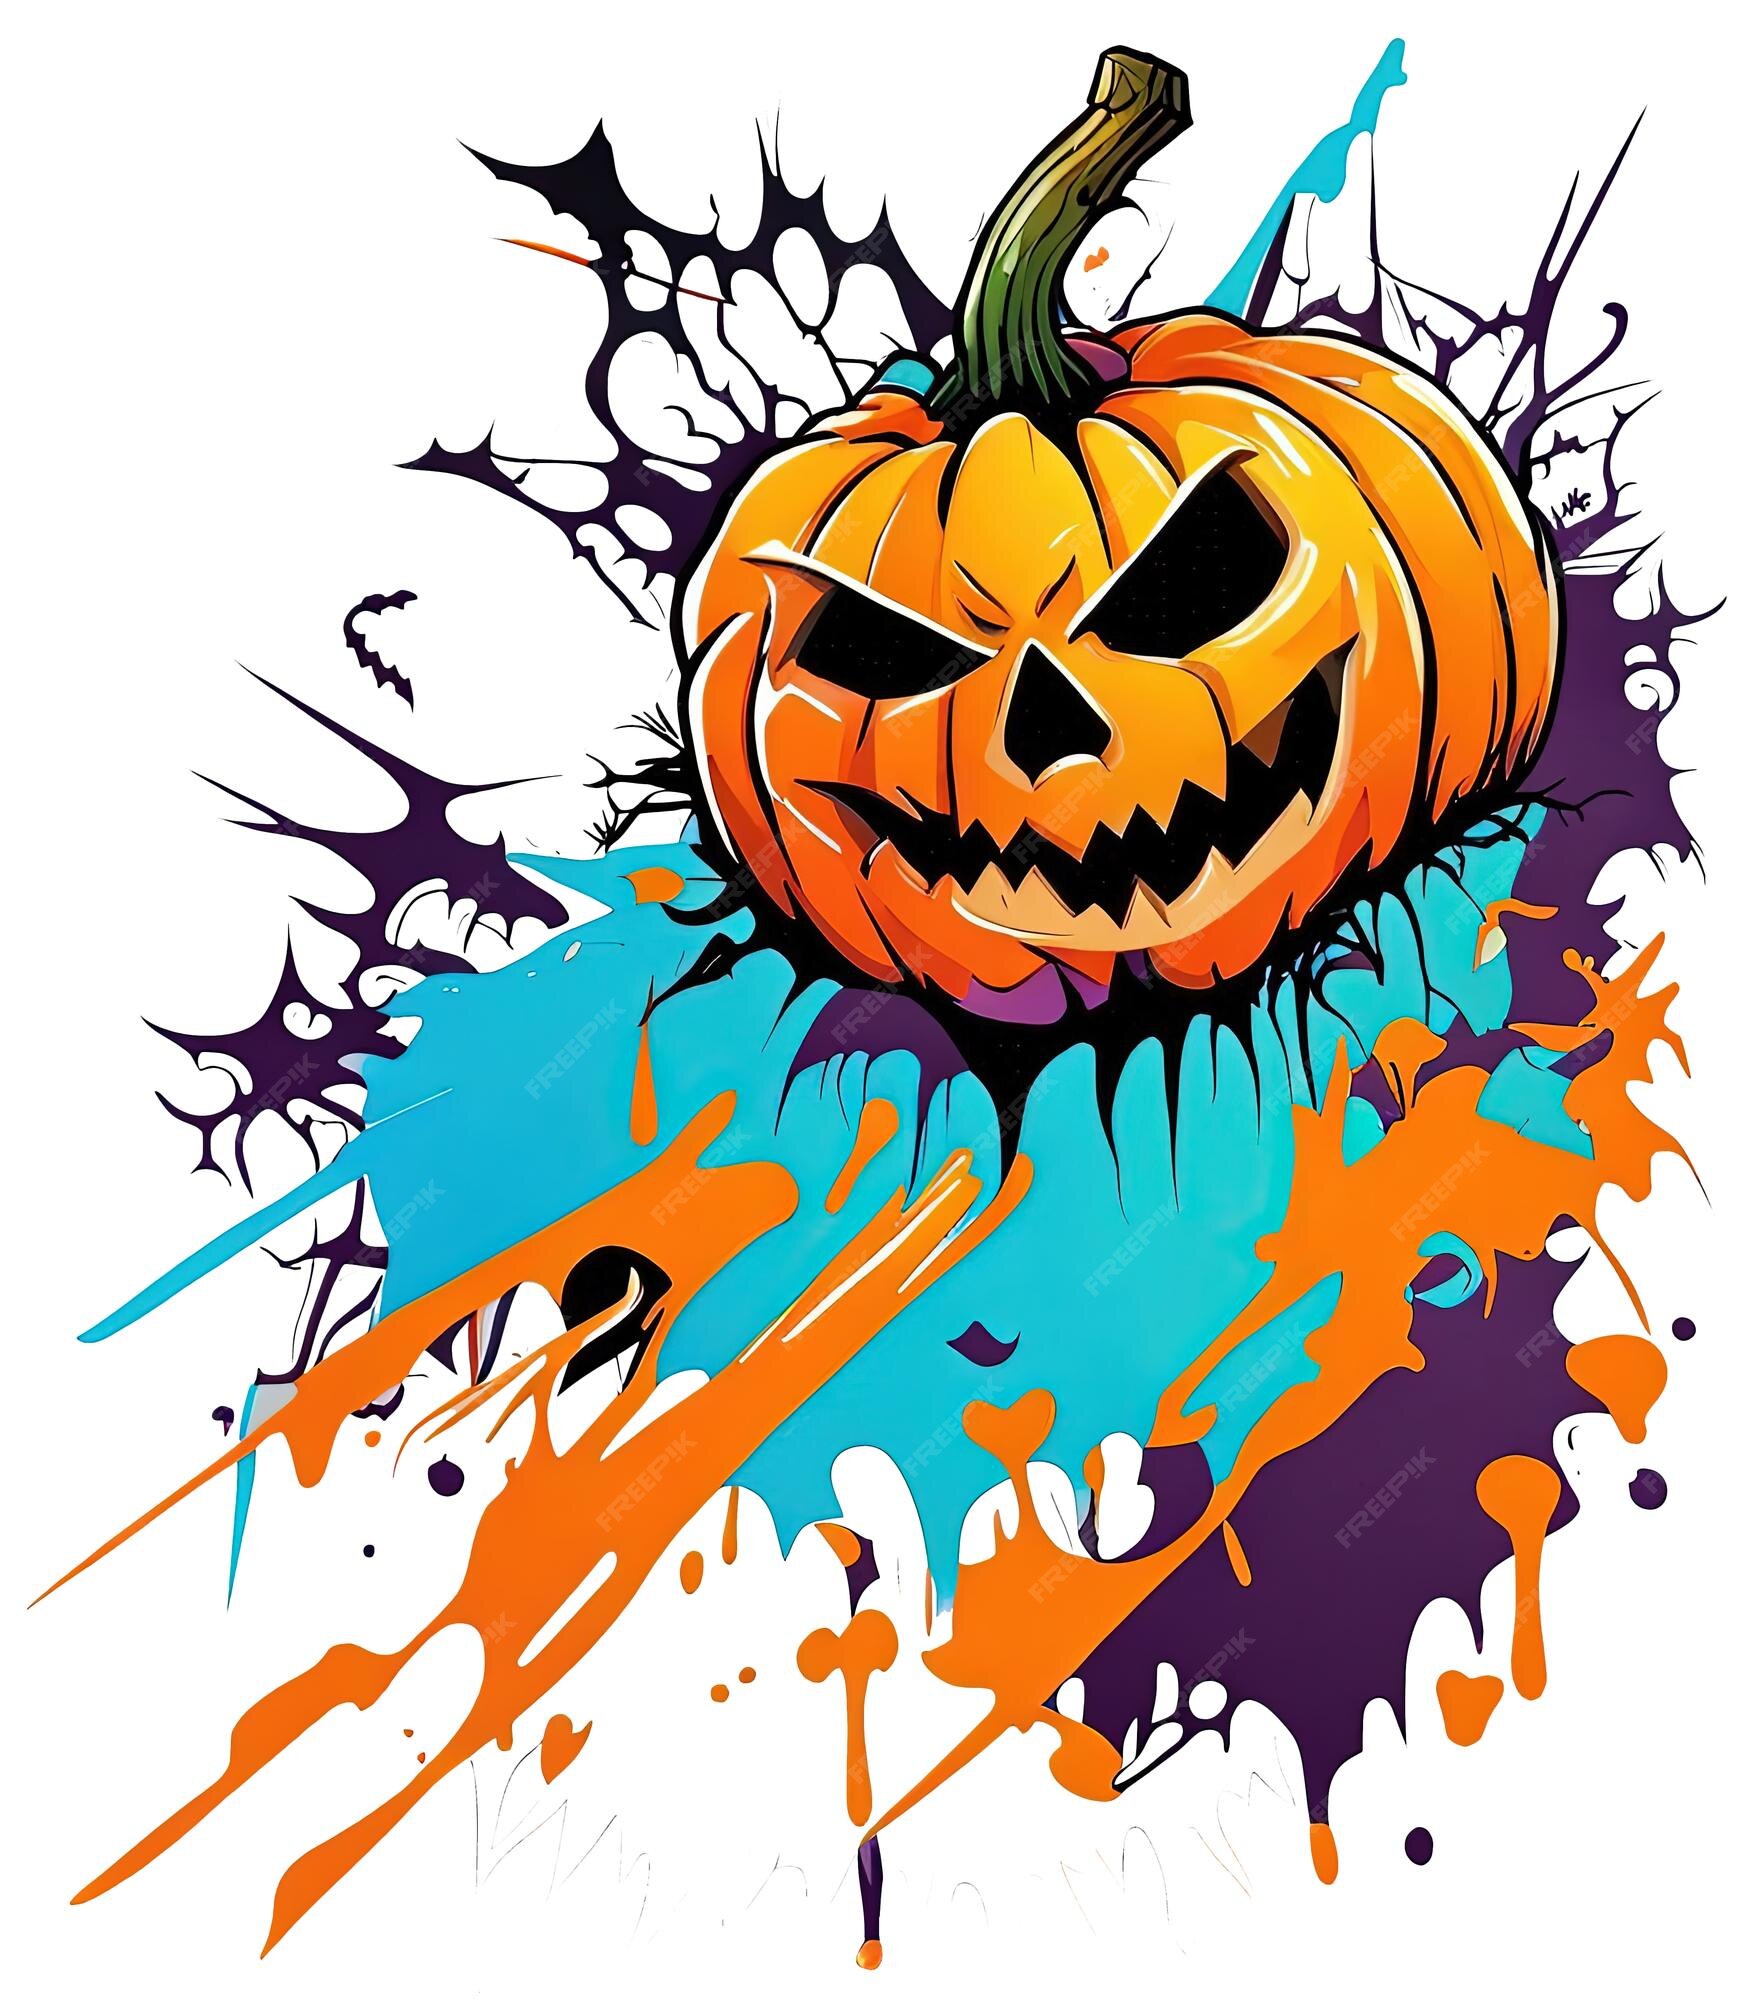 Abóbora de halloween com cara assustadora e salpicos coloridos